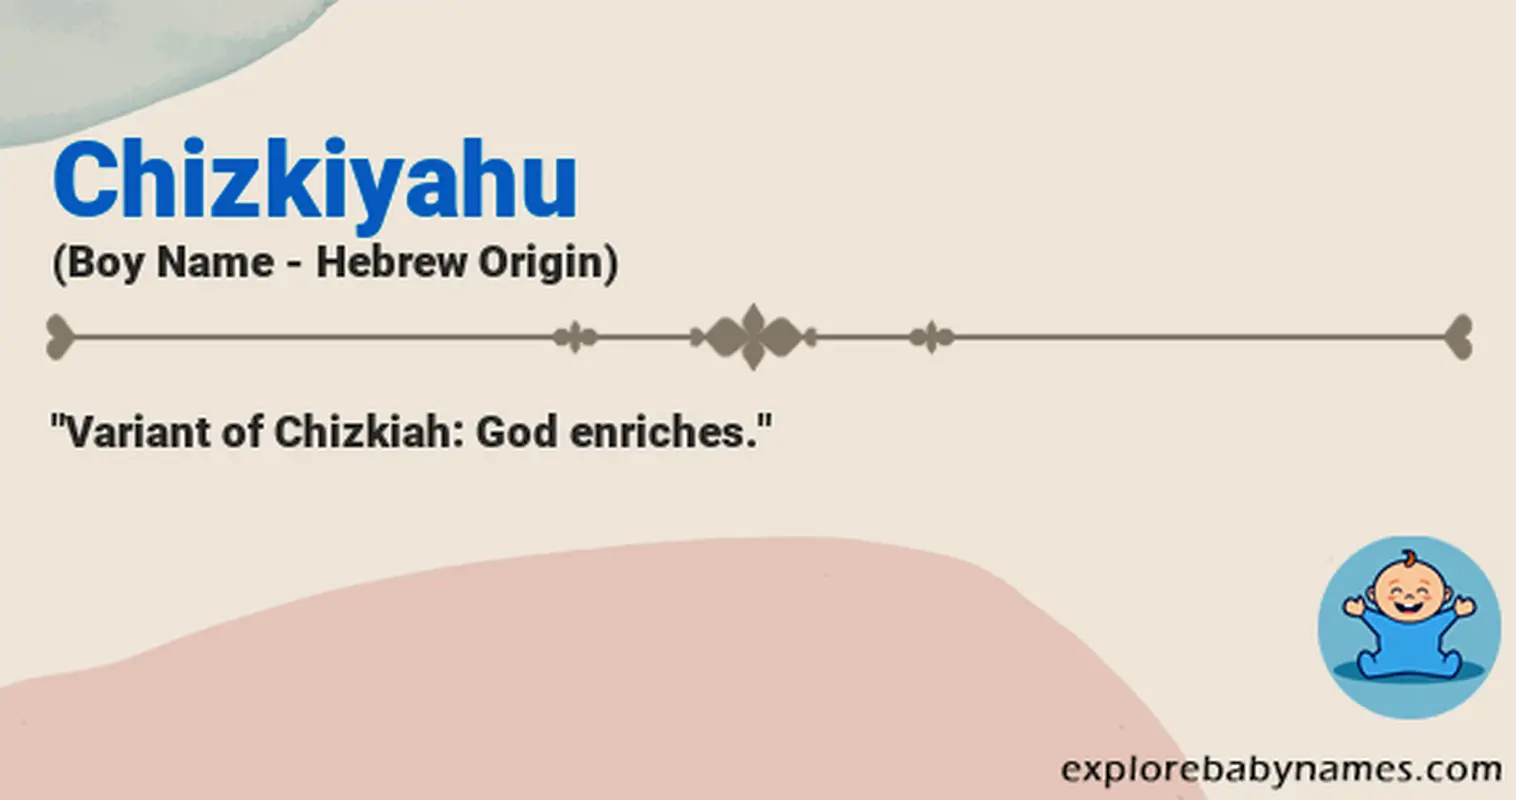 Meaning of Chizkiyahu